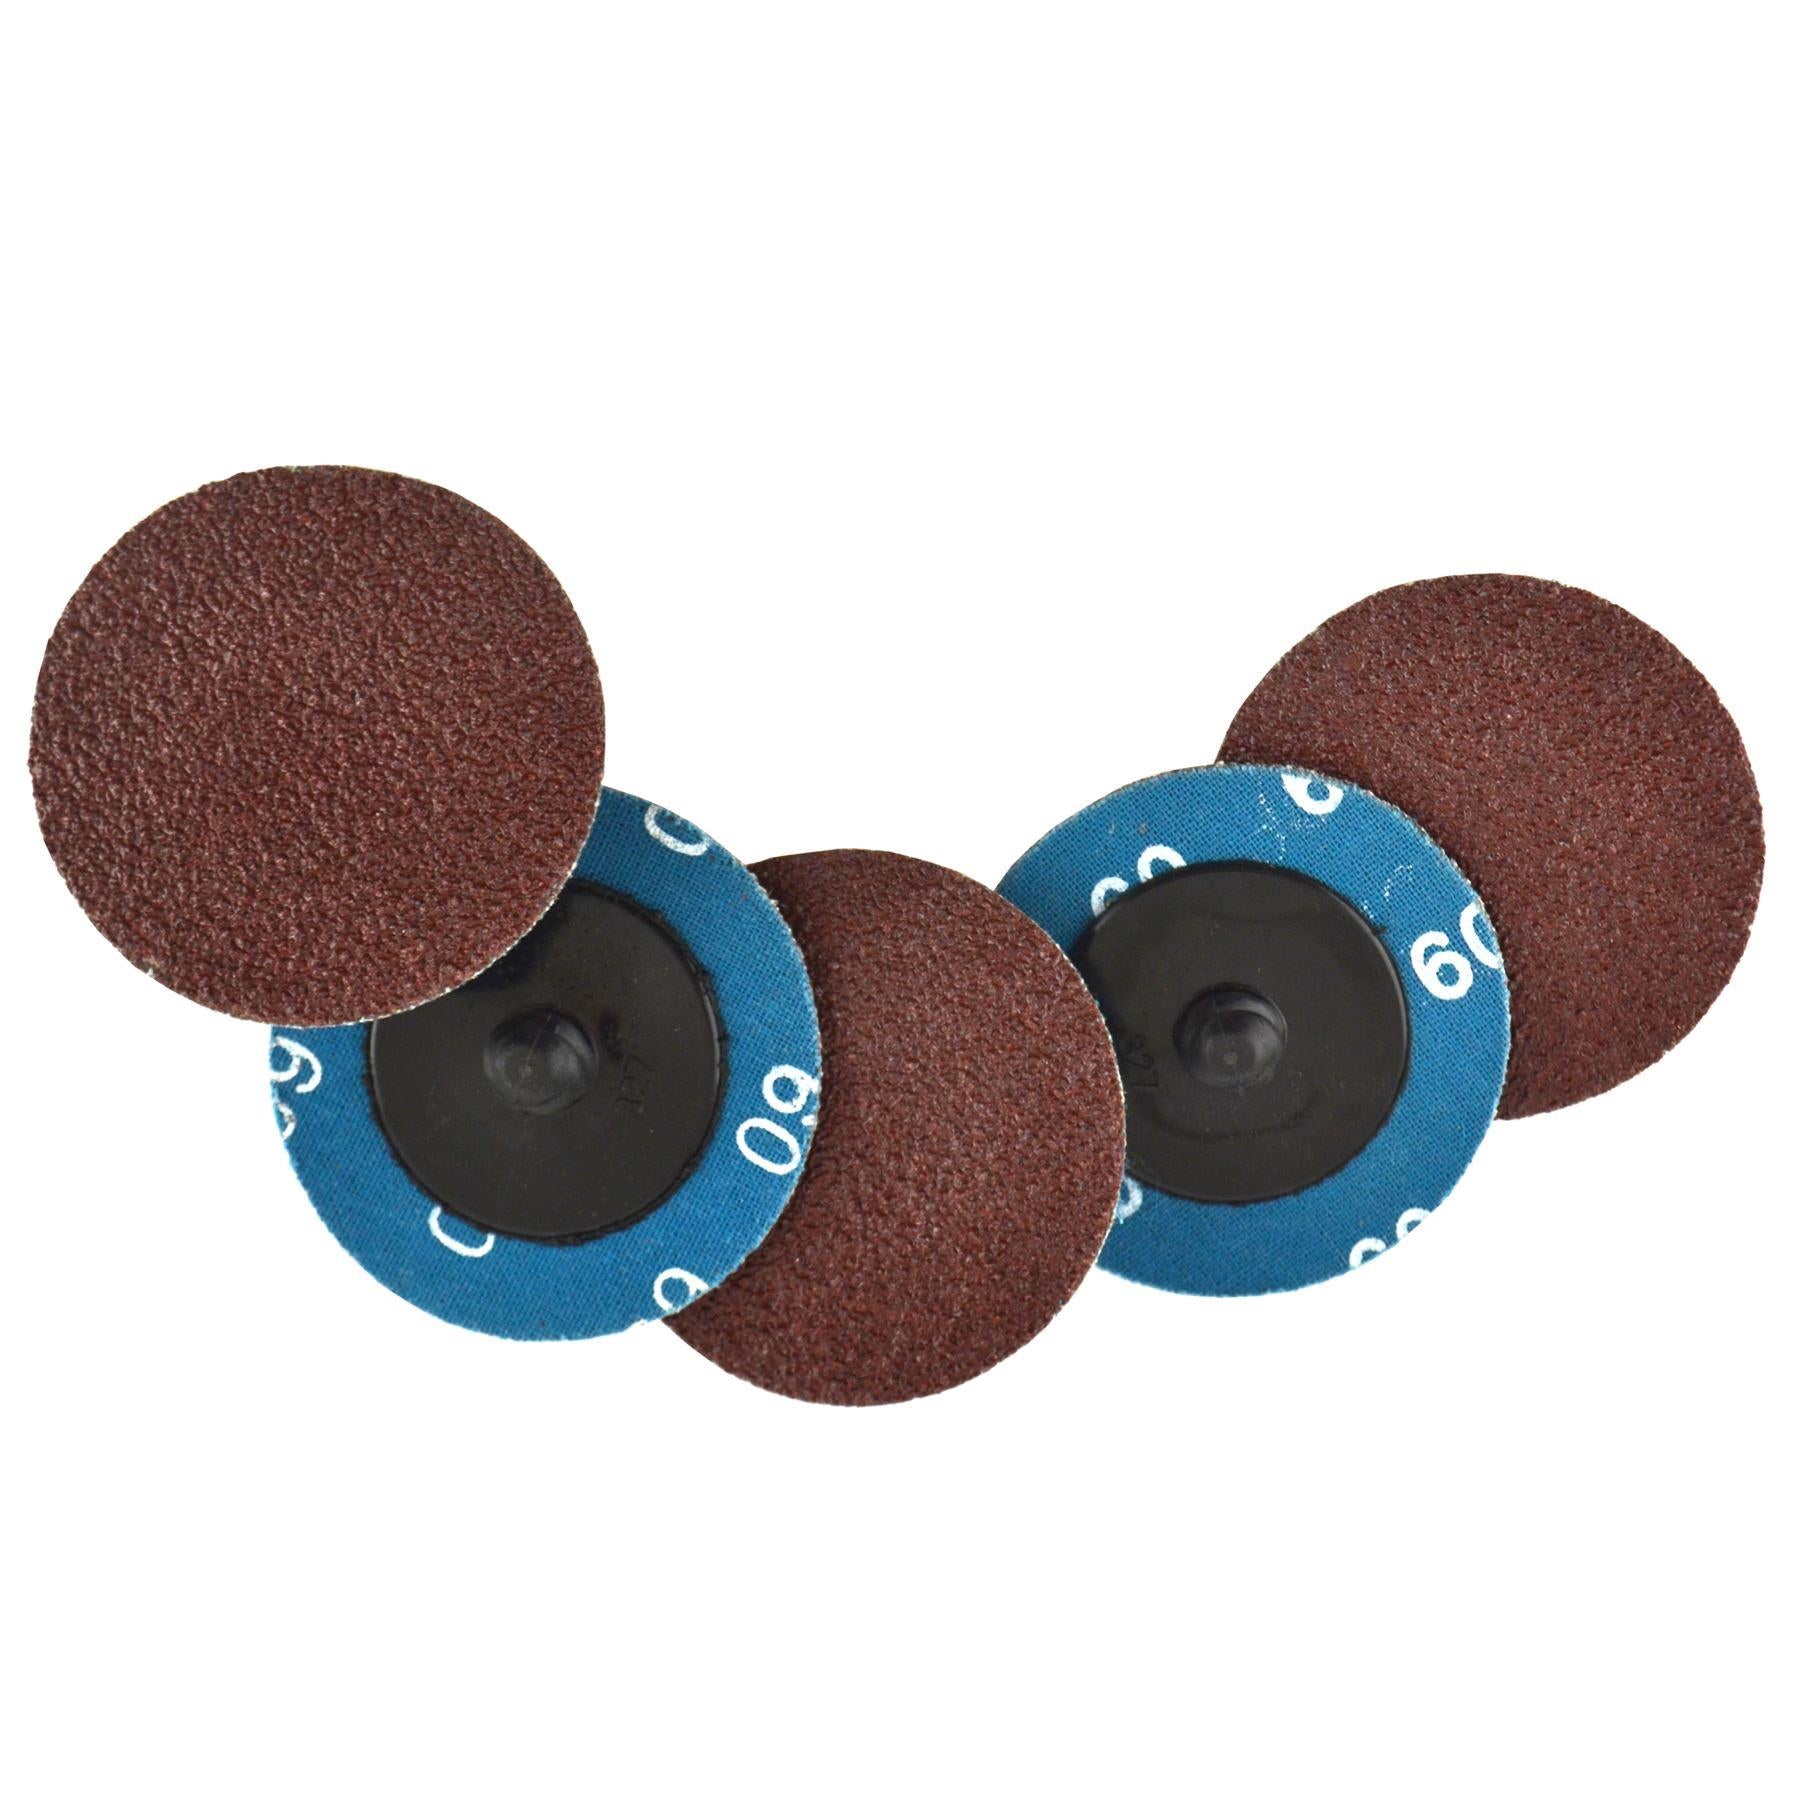 Flap Disc Set 50mm Twist Button Abrasive Discs Sanding